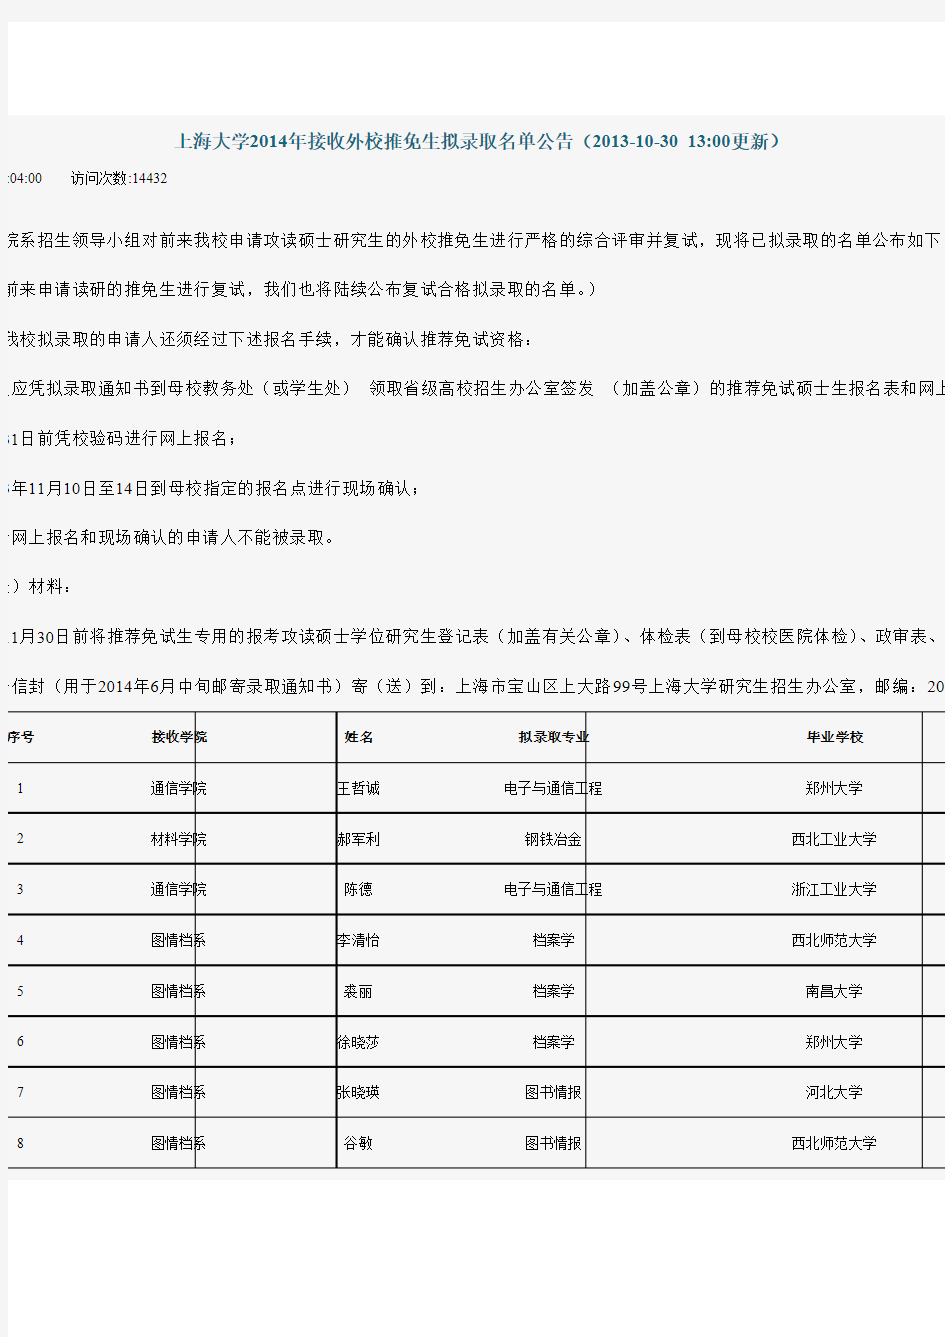 上海大学2014年接收外校推免生拟录取名单公告-推荐下载